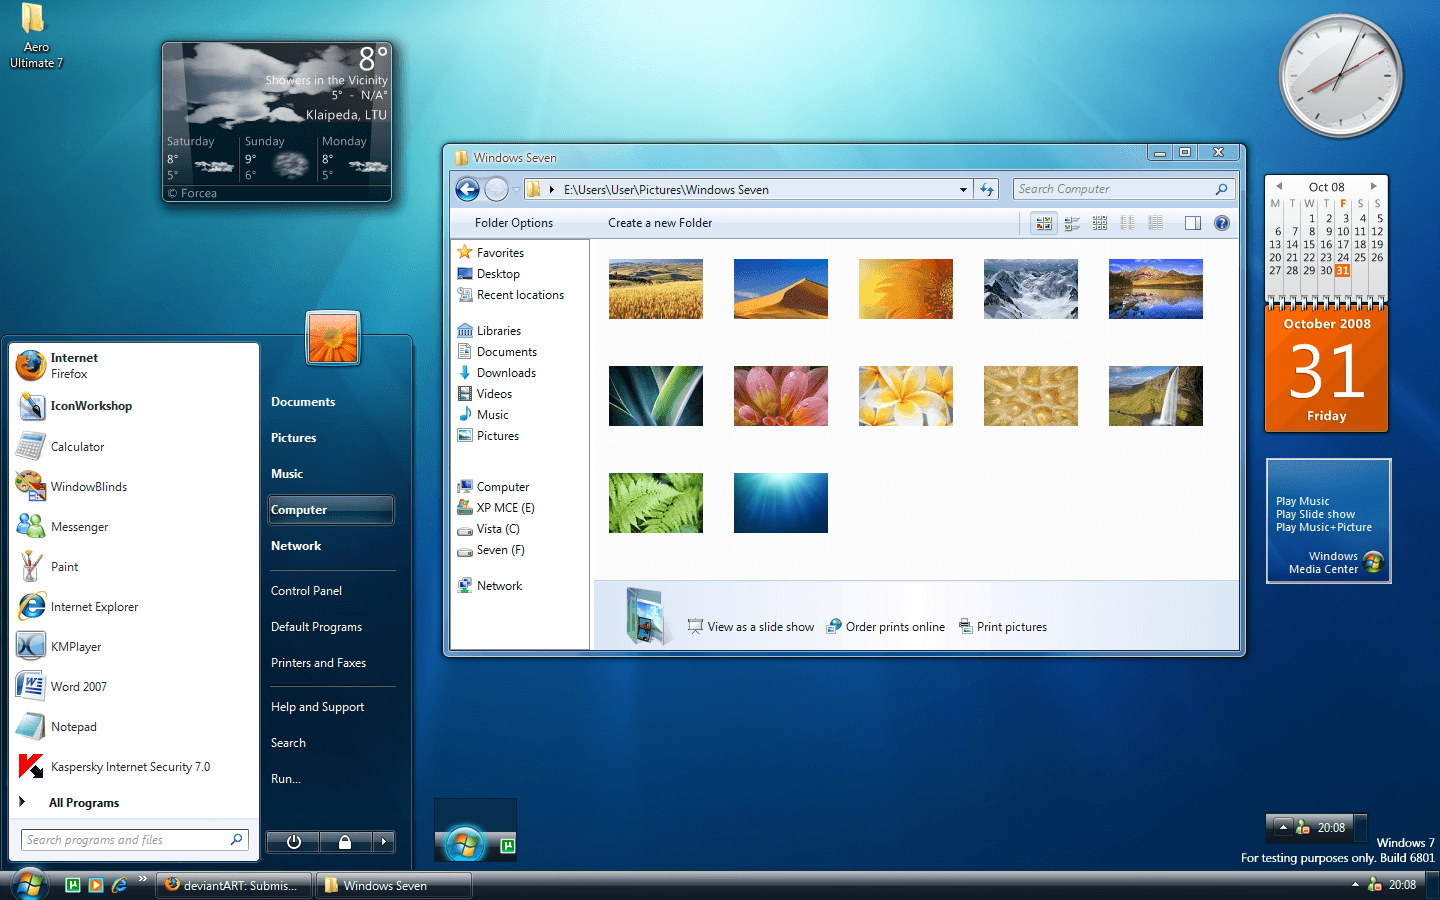 Actualizar de Windows 7 a Windows 10